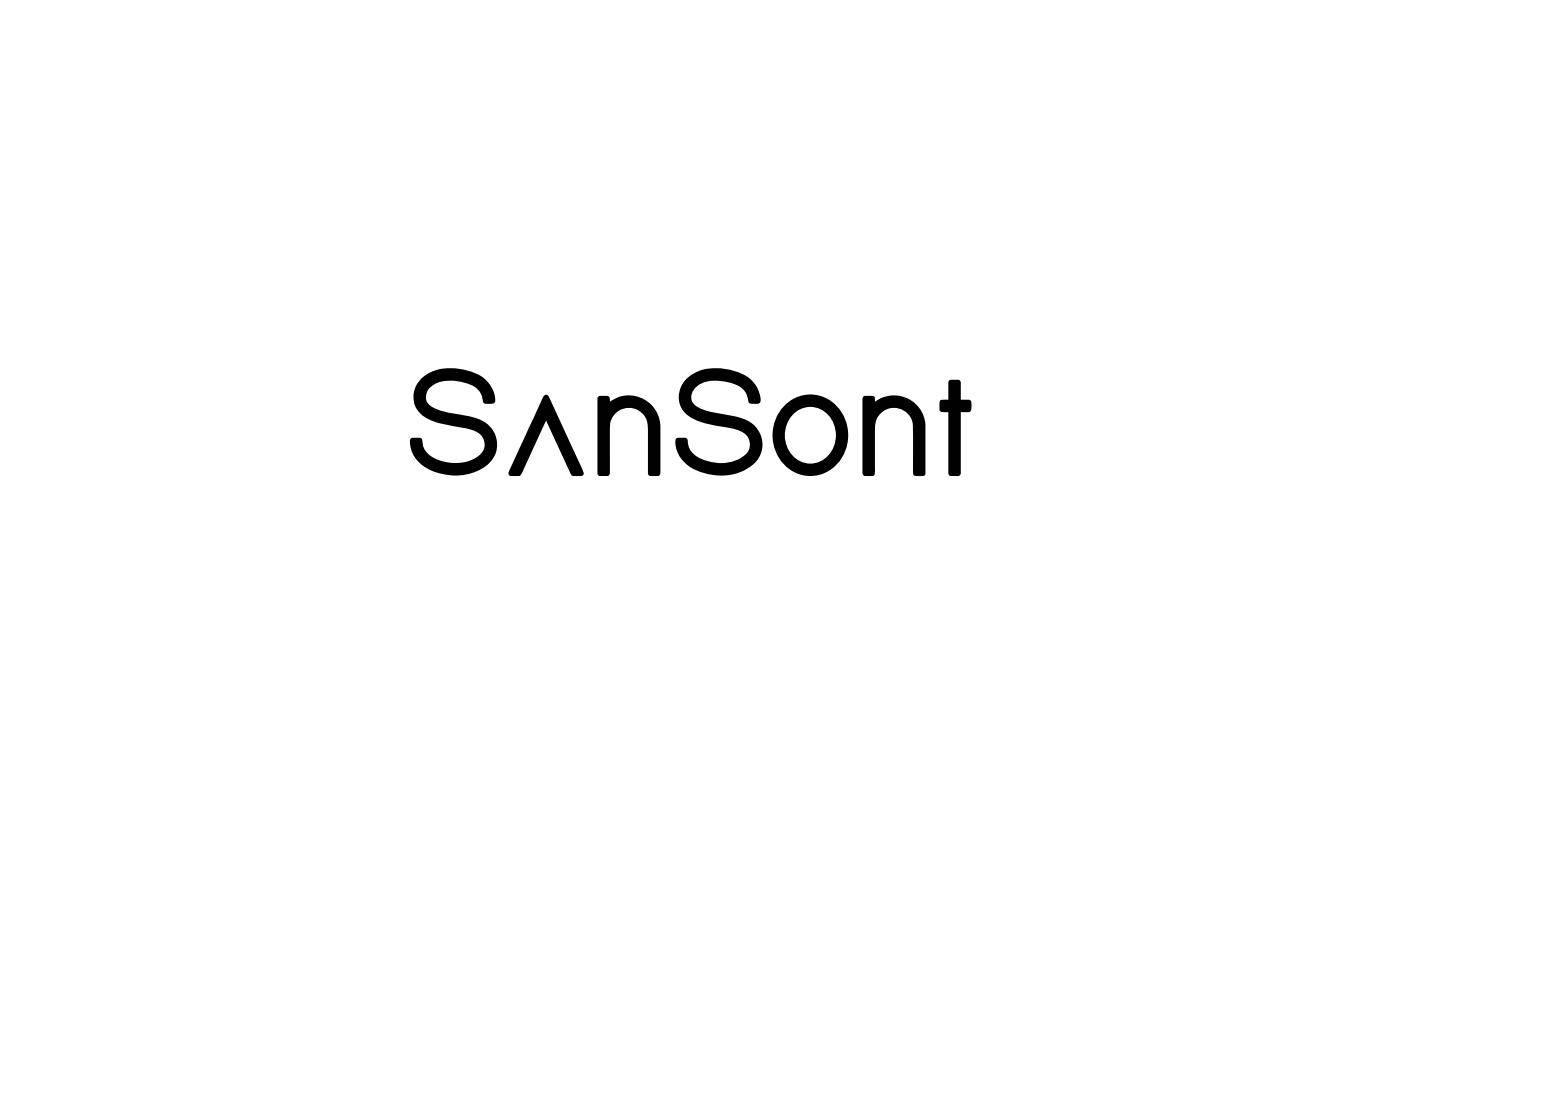 SanSont